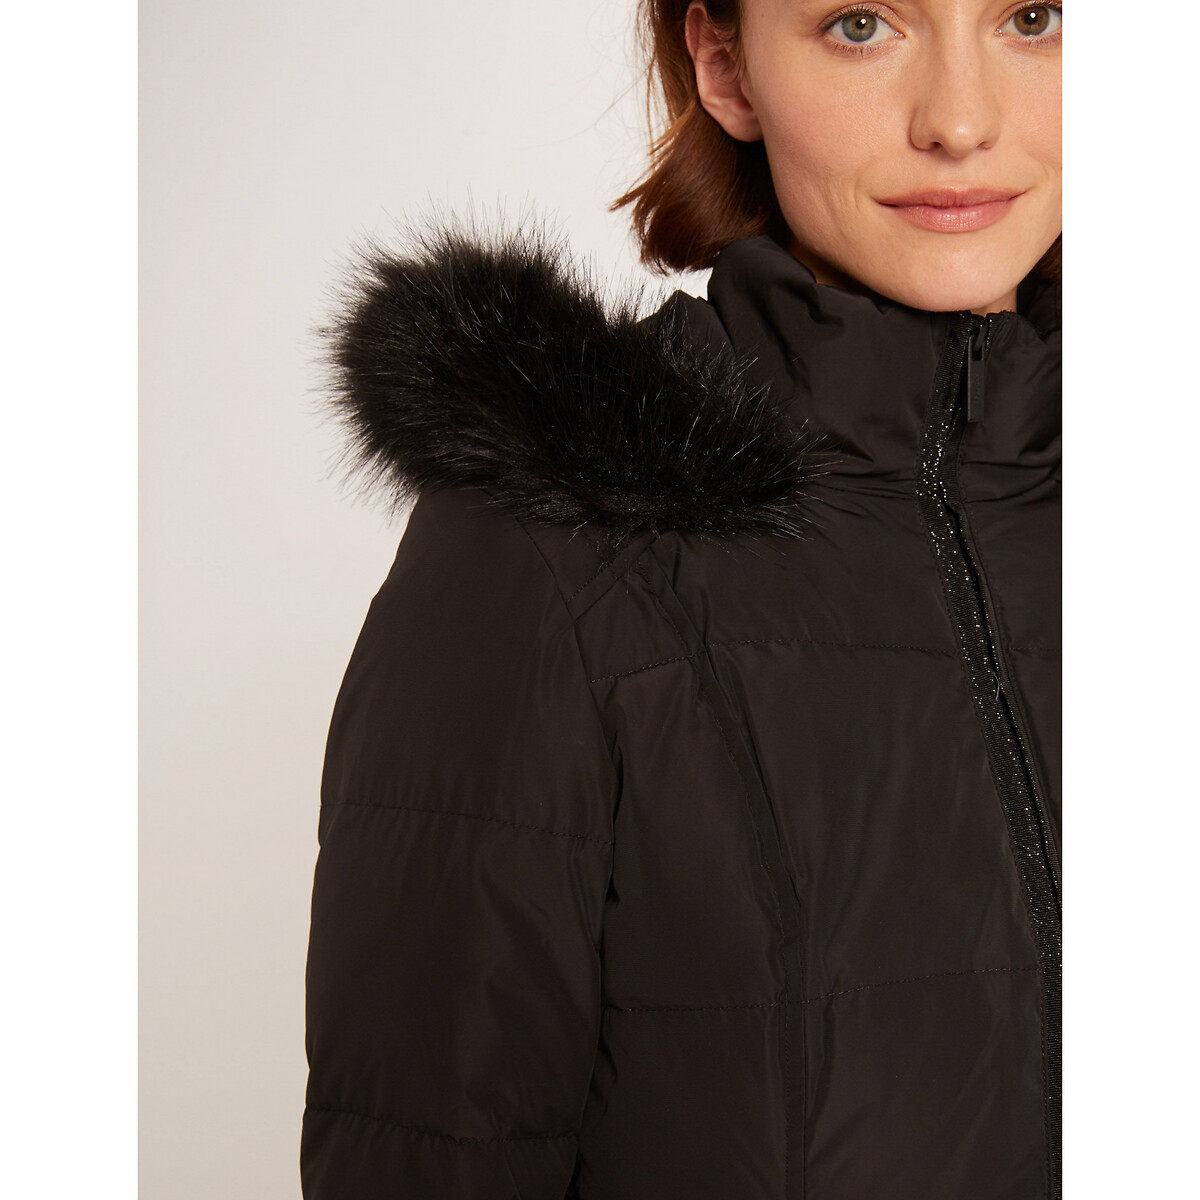 Куртка La Redoute Стеганая короткая с капюшоном и ремешком 36 (FR) - 42 (RUS) черный, размер 36 (FR) - 42 (RUS) Стеганая короткая с капюшоном и ремешком 36 (FR) - 42 (RUS) черный - фото 4